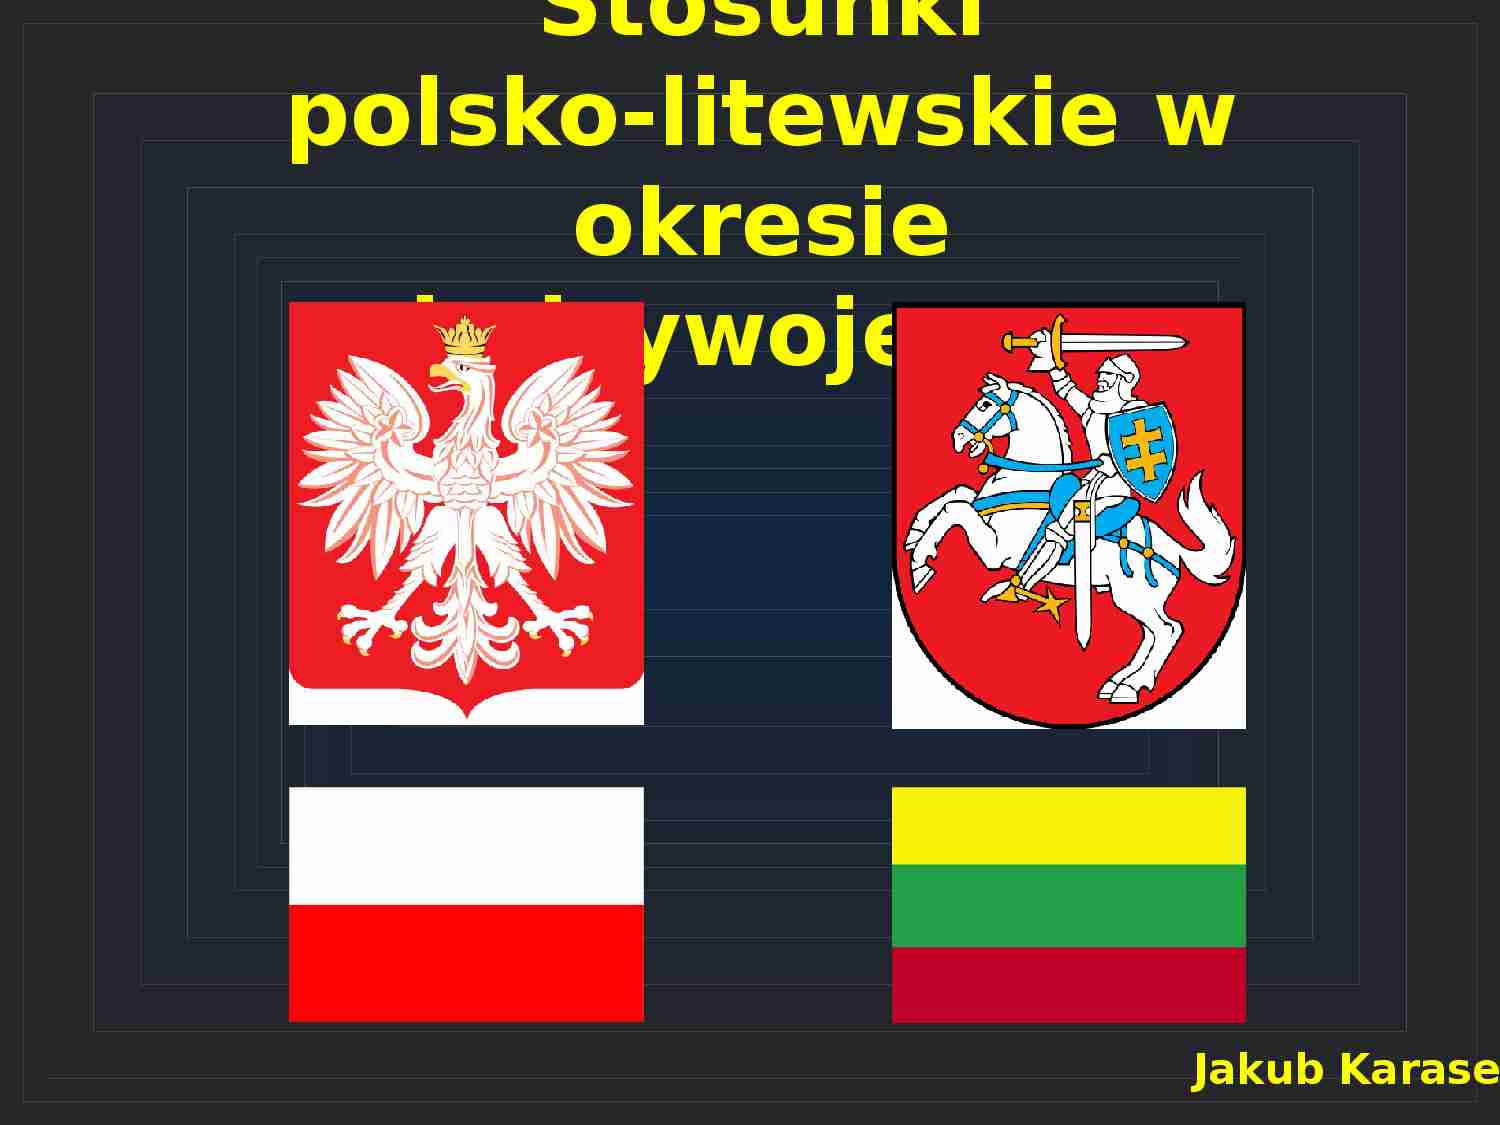 Stosunki polsko-litewskie w okresie międzywojennym-prezentacja - strona 1